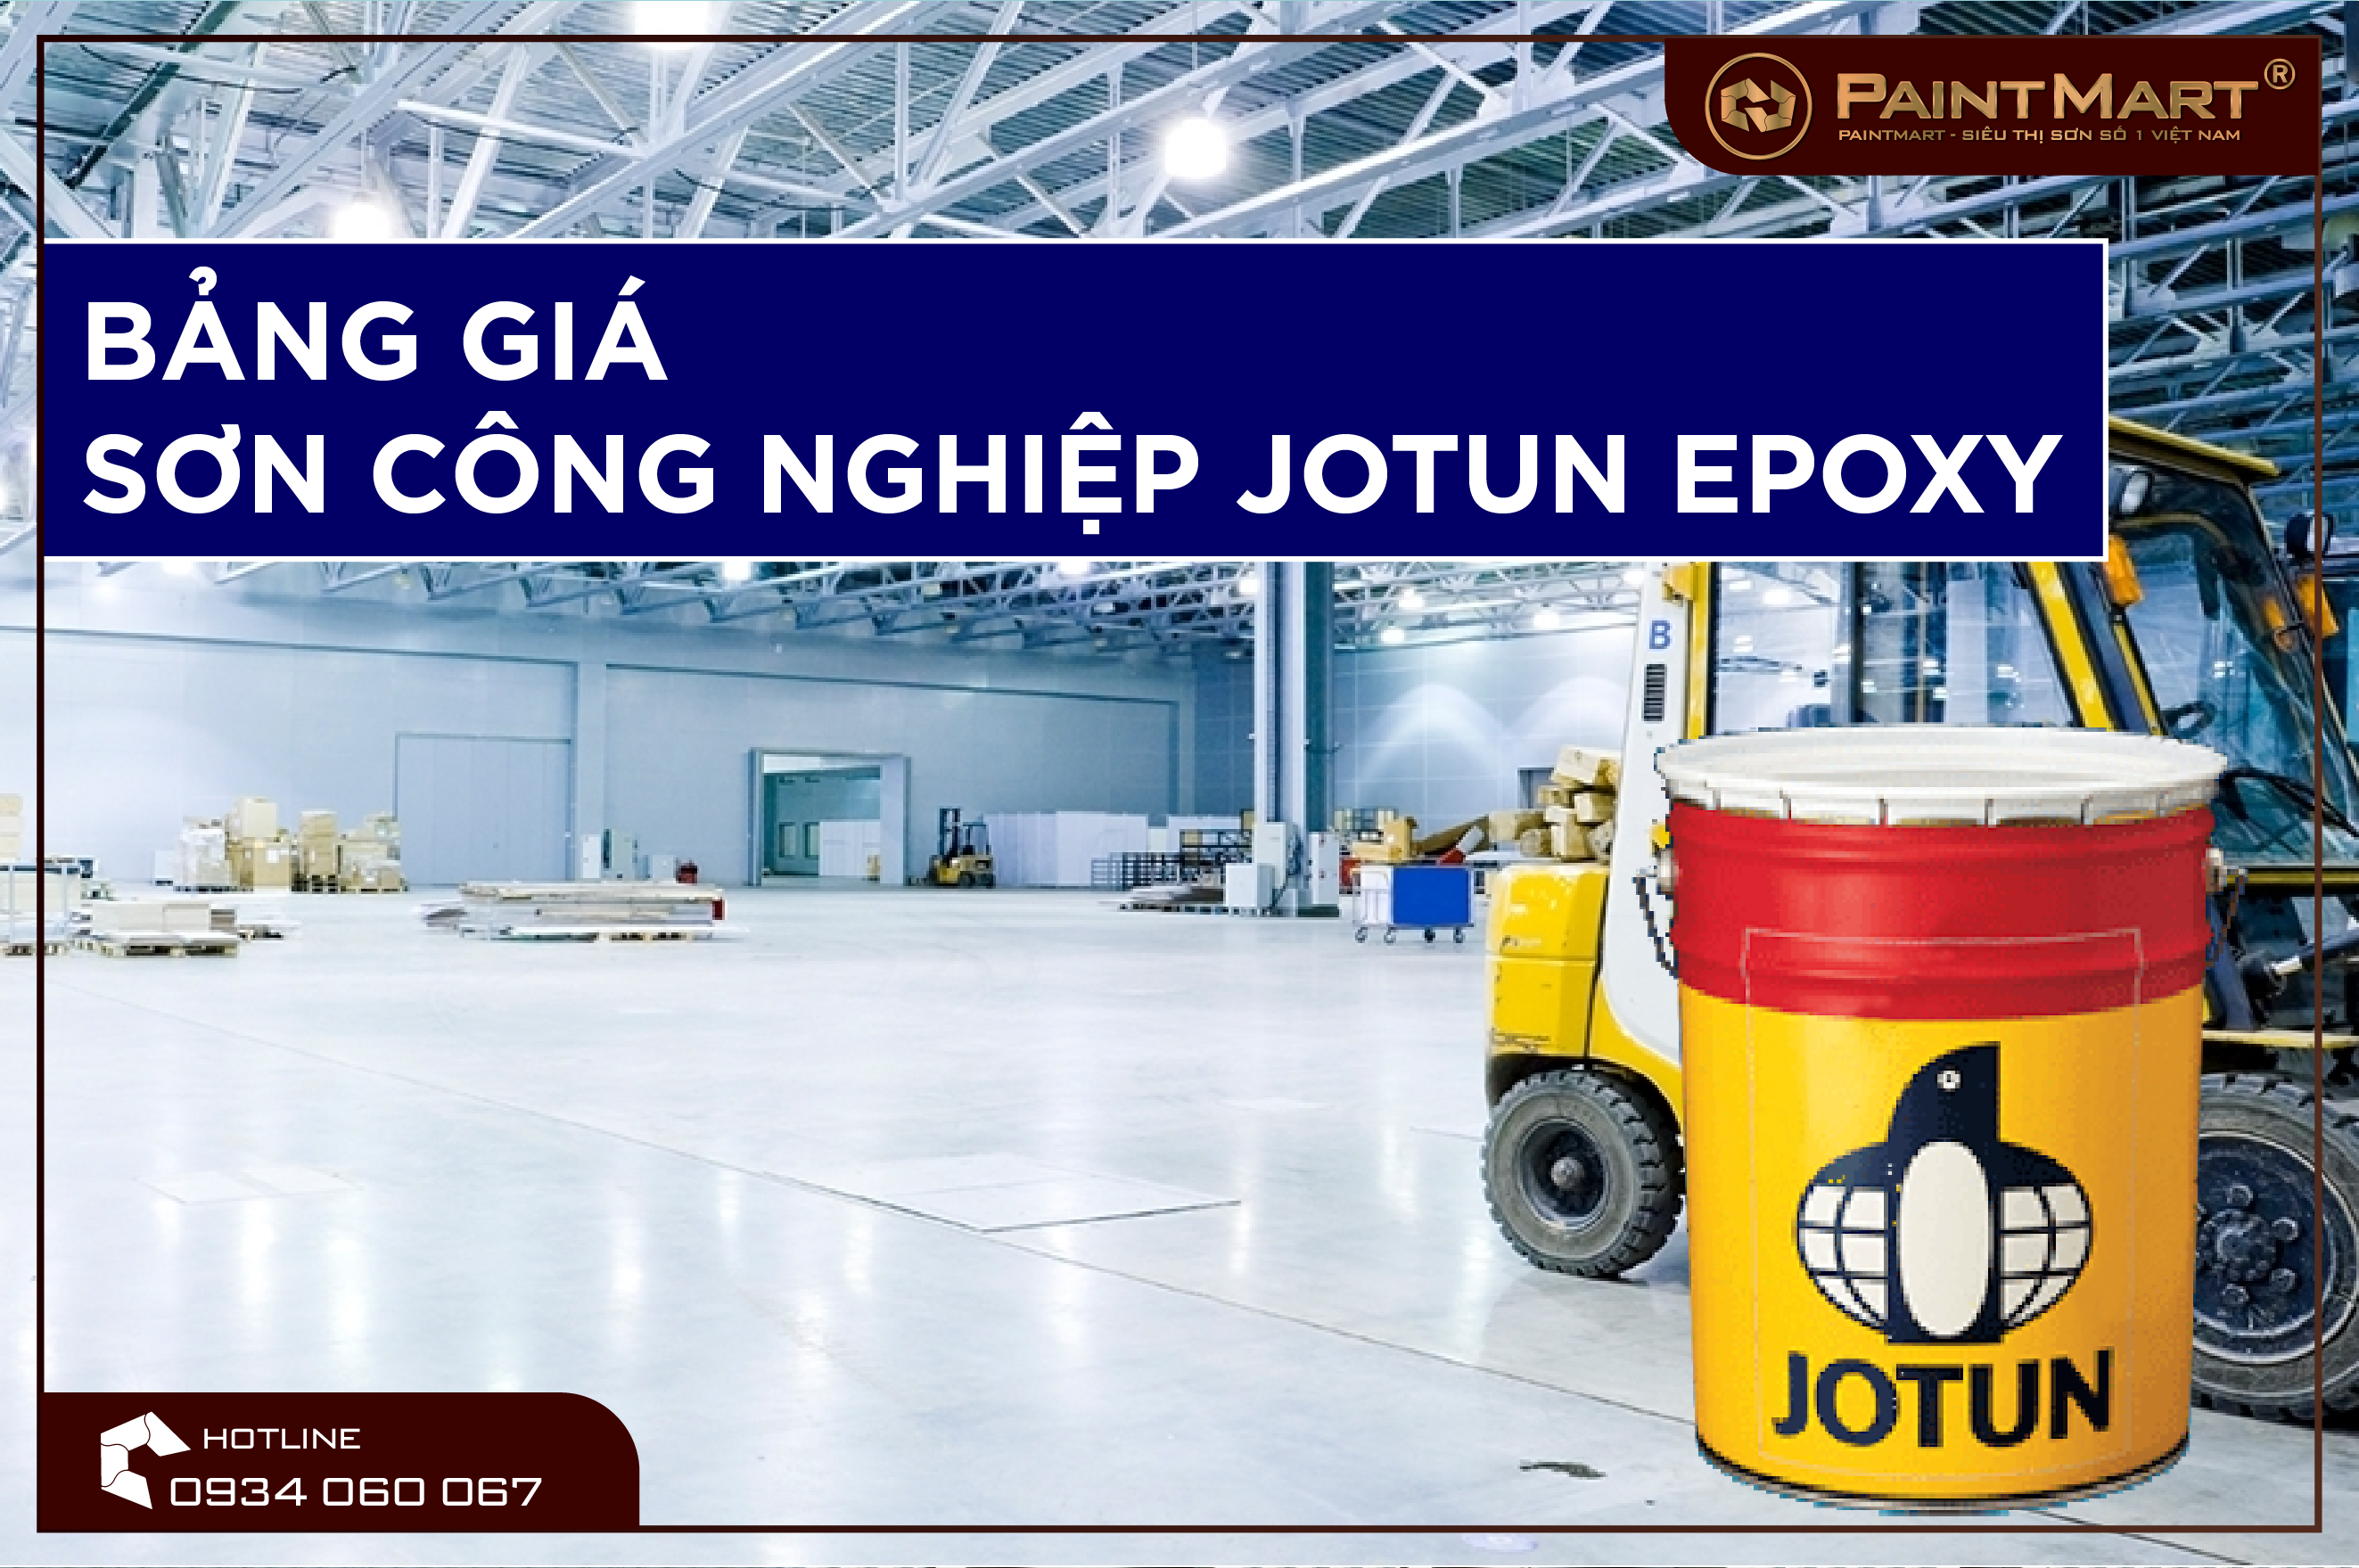 Thỏa sức sáng tạo với sơn công nghiệp Jotun Epoxy - sản phẩm sơn chất lượng cao, đáp ứng mọi yêu cầu và thân thiện môi trường.